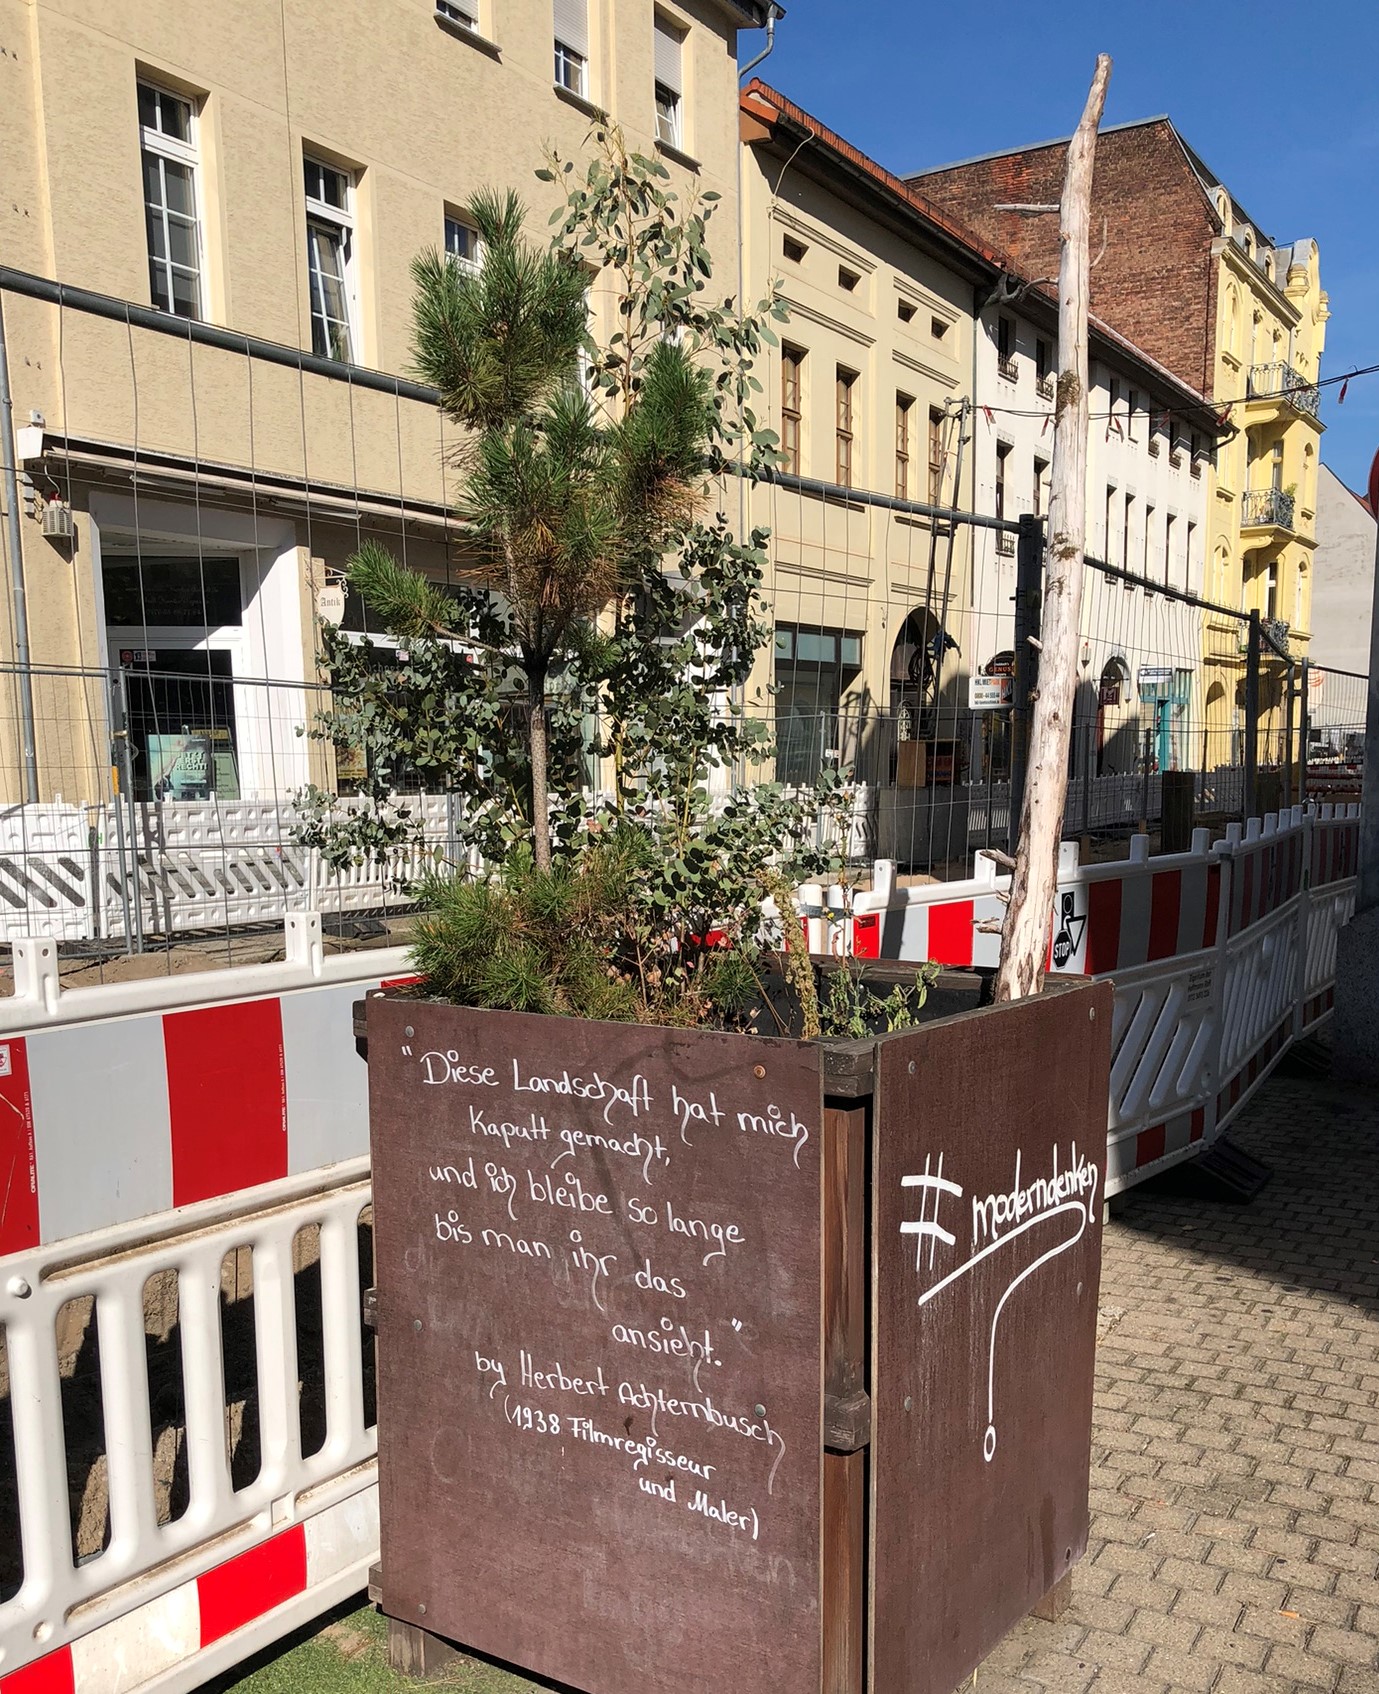 Blumenkübel vor dem Tobi ornot ToBe Restaurant in der Dessauer Johannisstraße mit dem Zitat "Diese Landschaft hat mich kaputt gemacht, ich bleibe solange bis man ihr das ansieht" von Herbert Achternbusch 